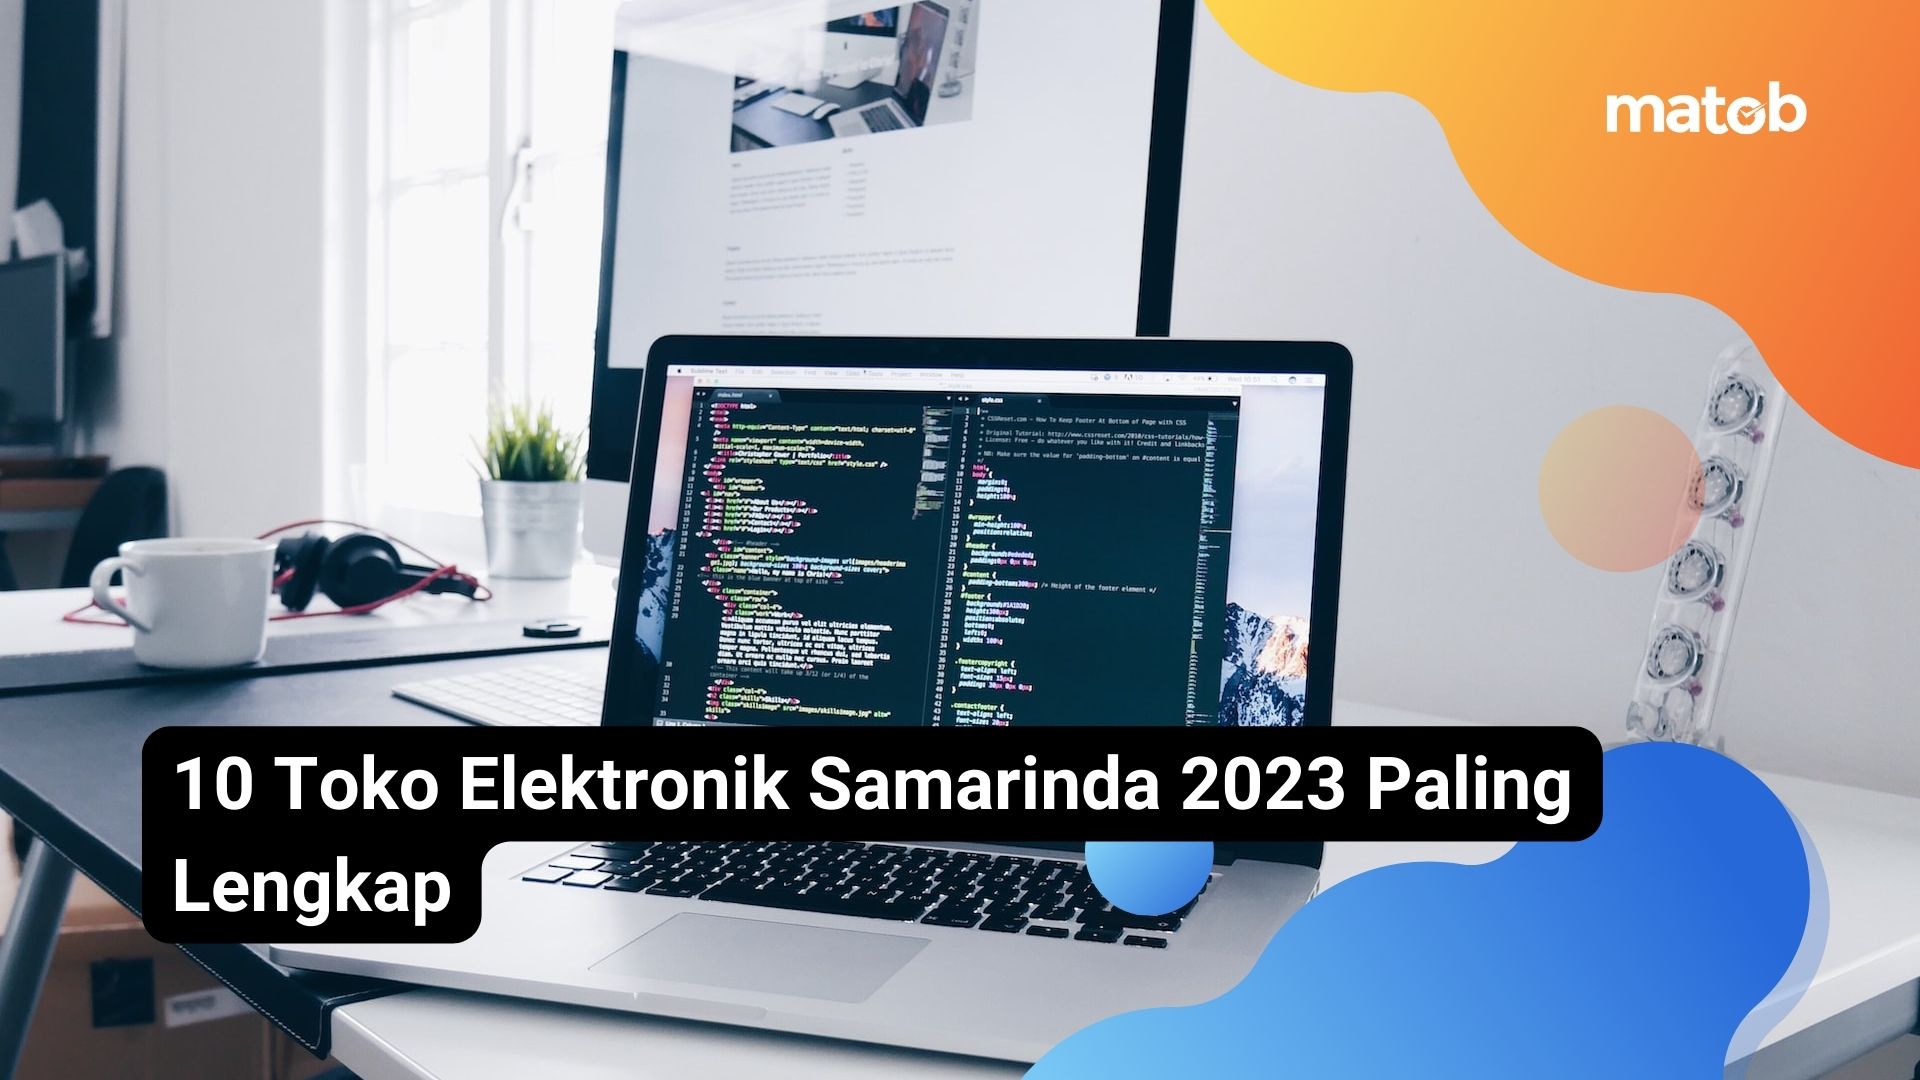 10 Toko Elektronik Samarinda 2023 Paling Lengkap